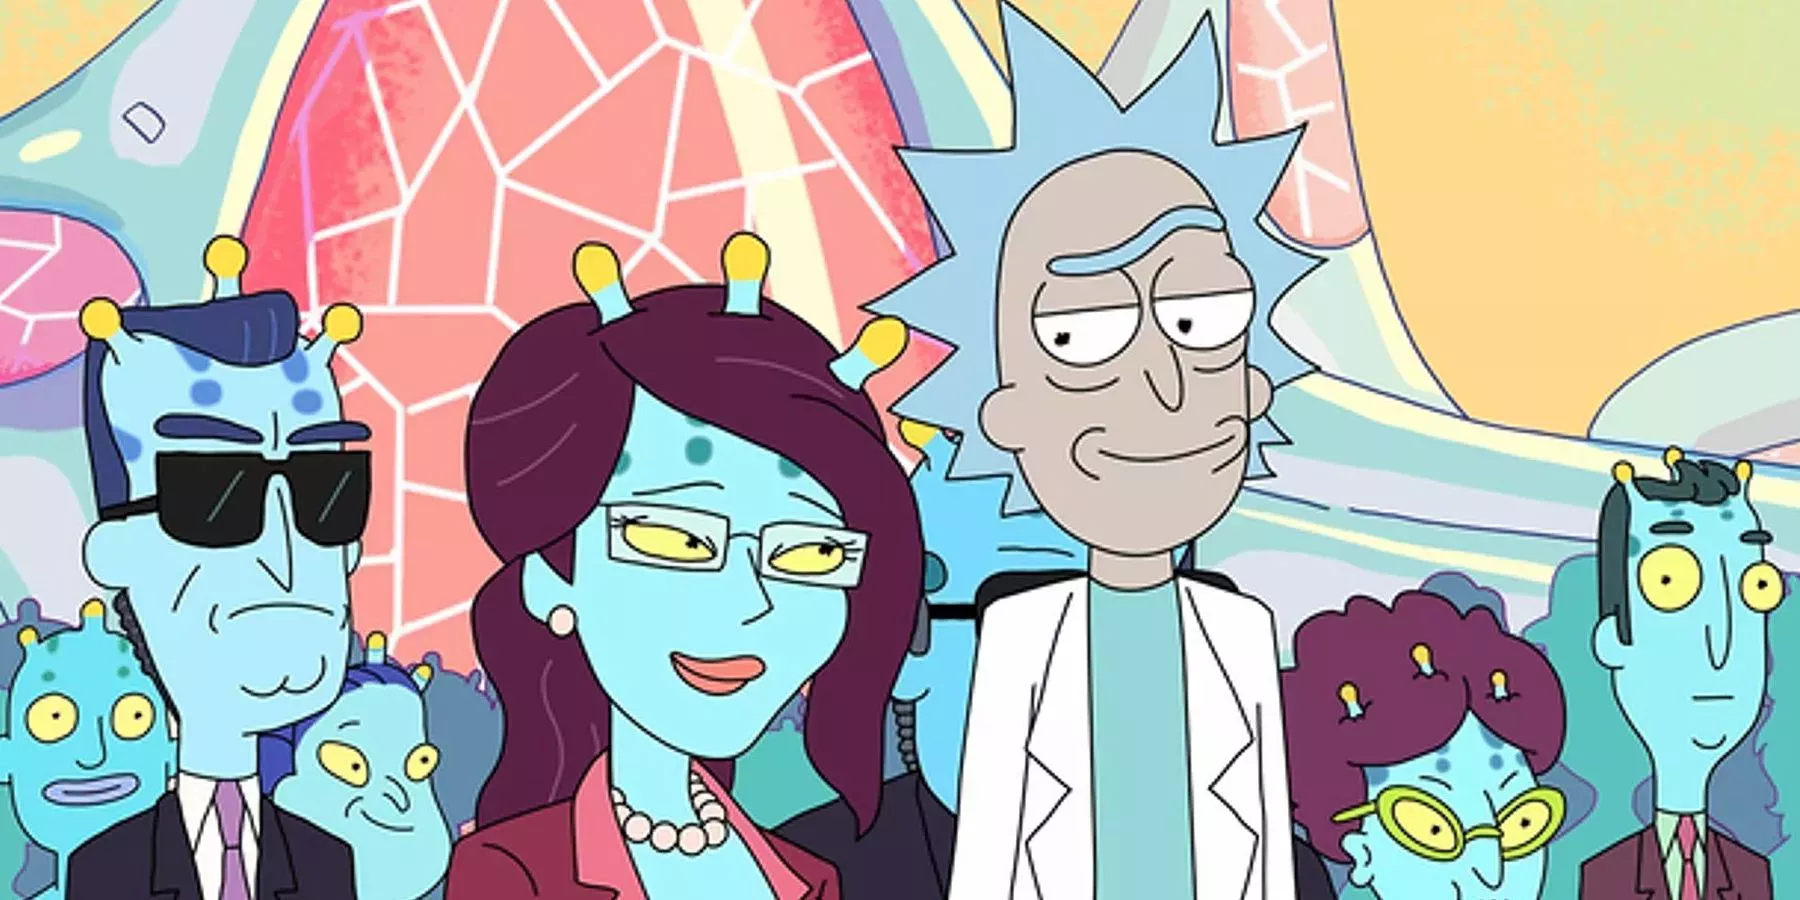 Rick y Morty: Los intereses amorosos de Rick, clasificados | Cultture